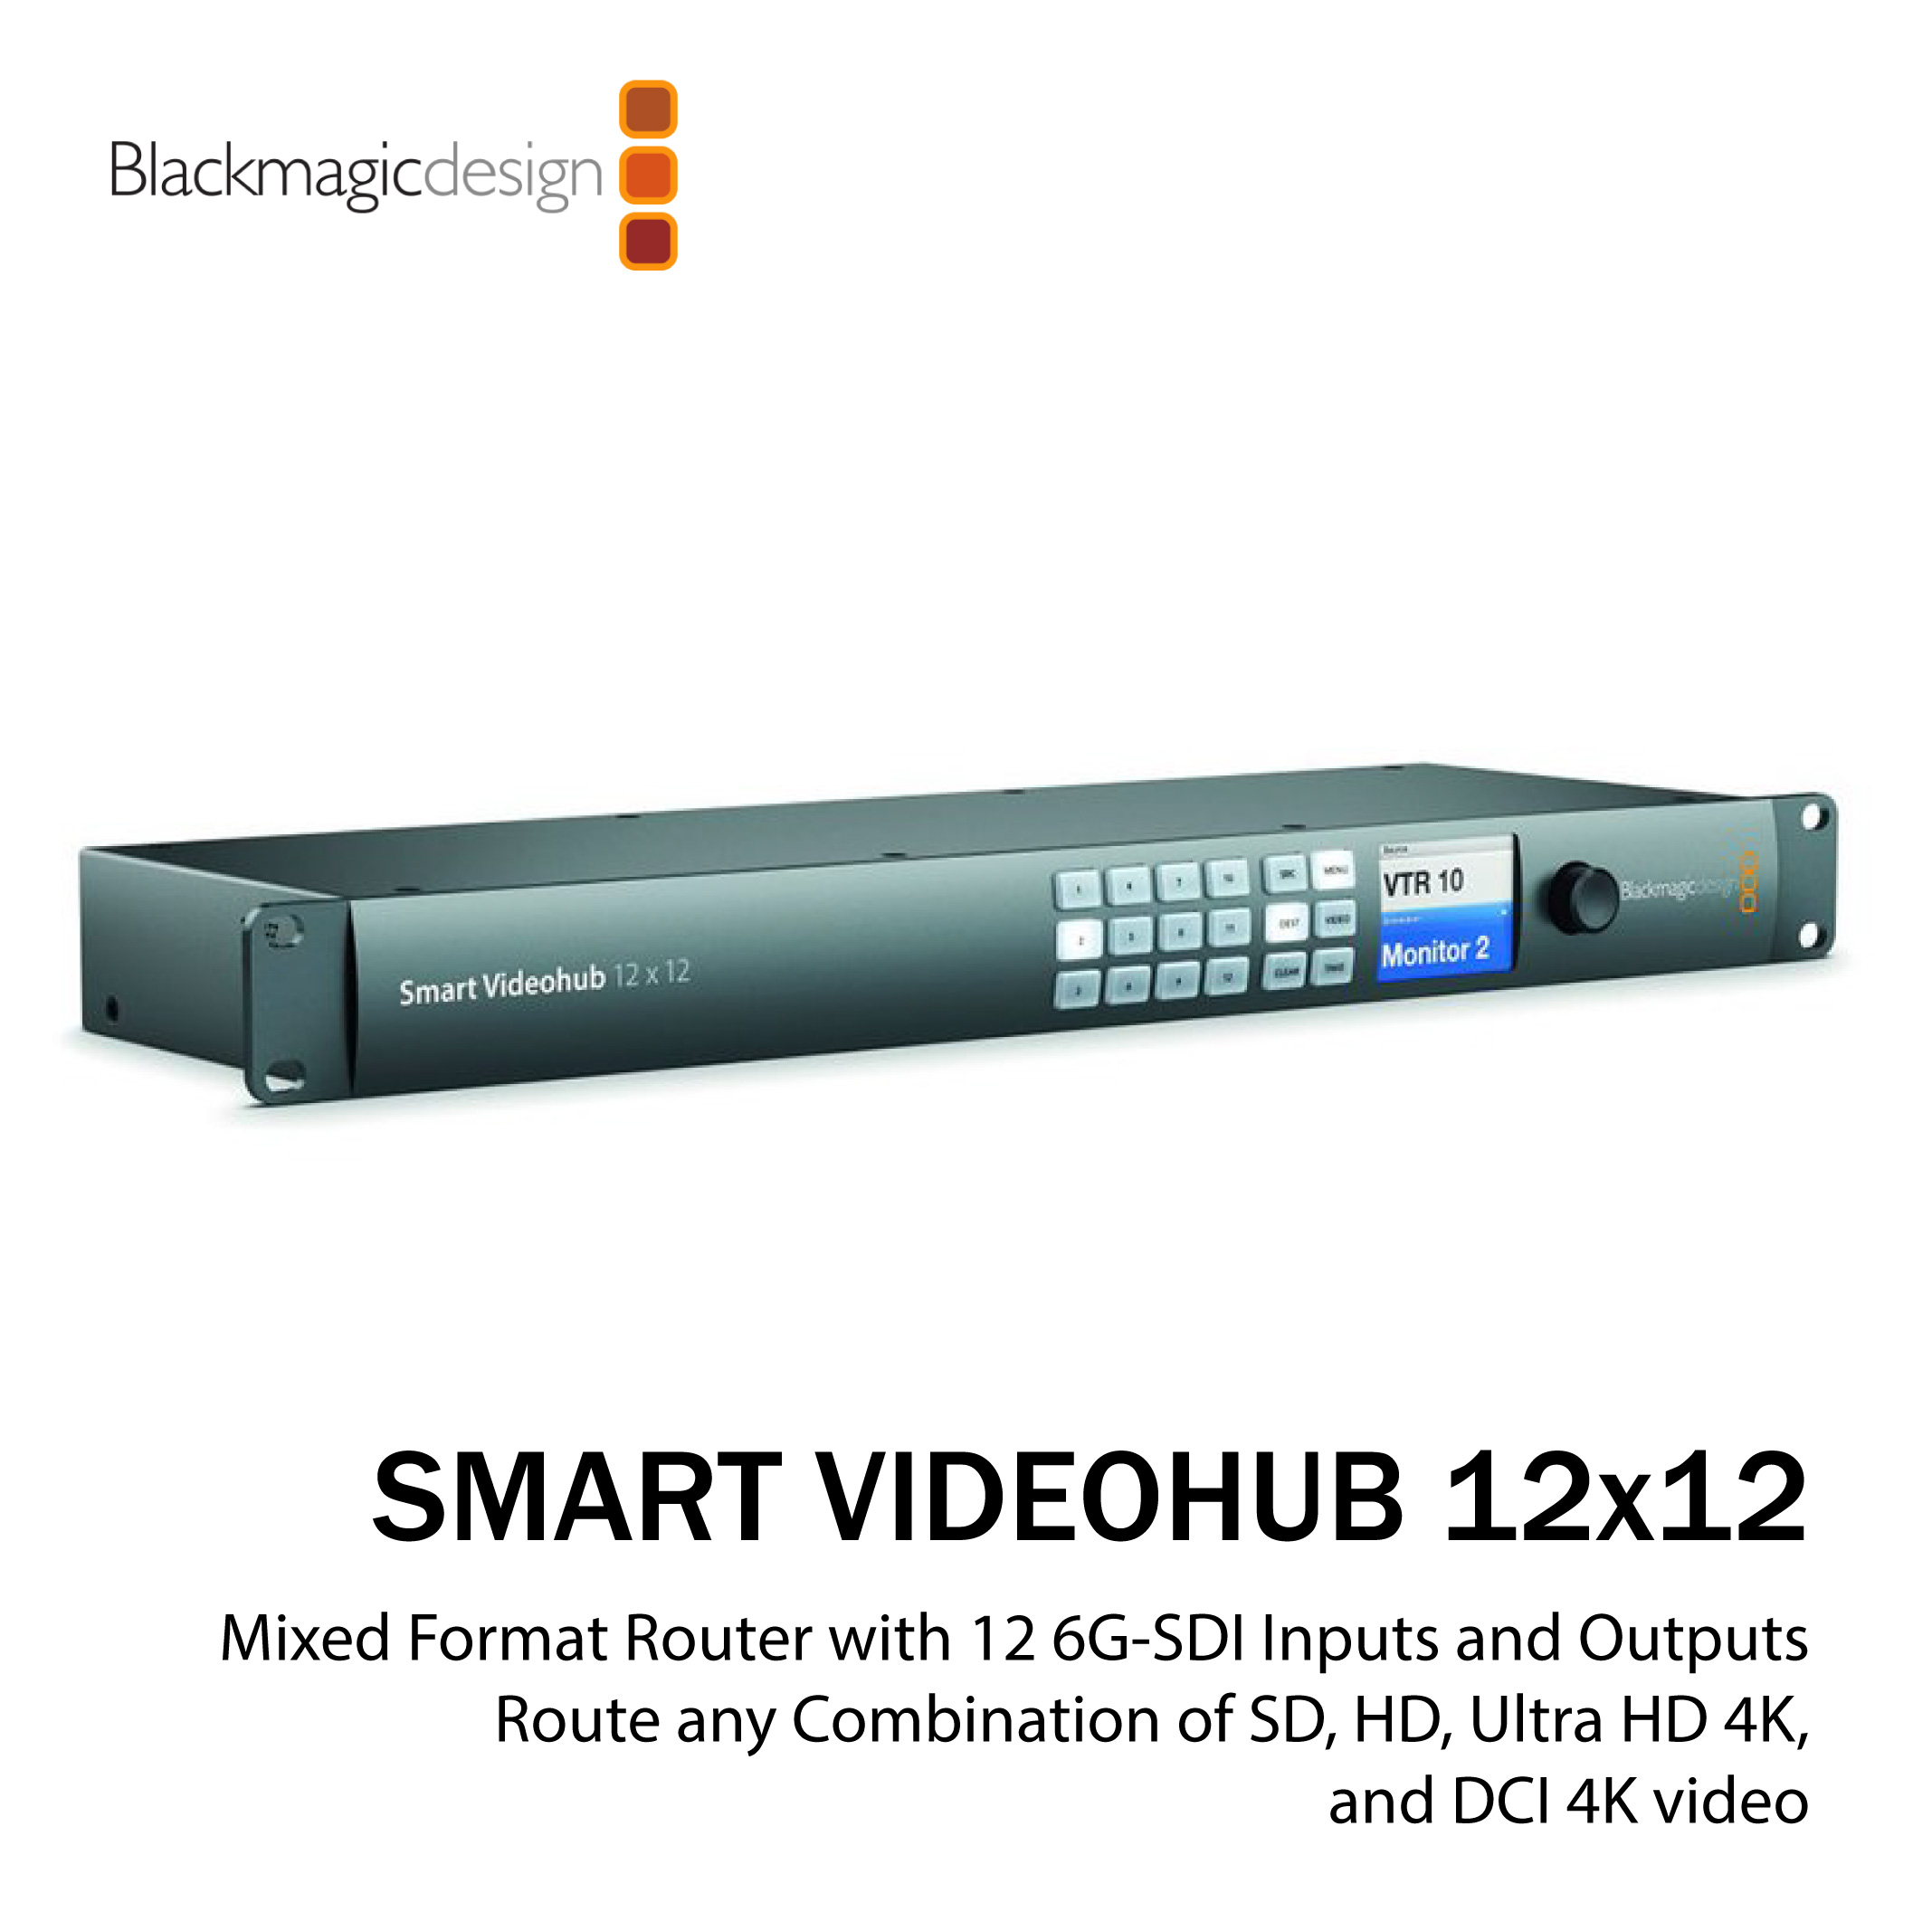 blackmagic smart videohub 12x12 ip address